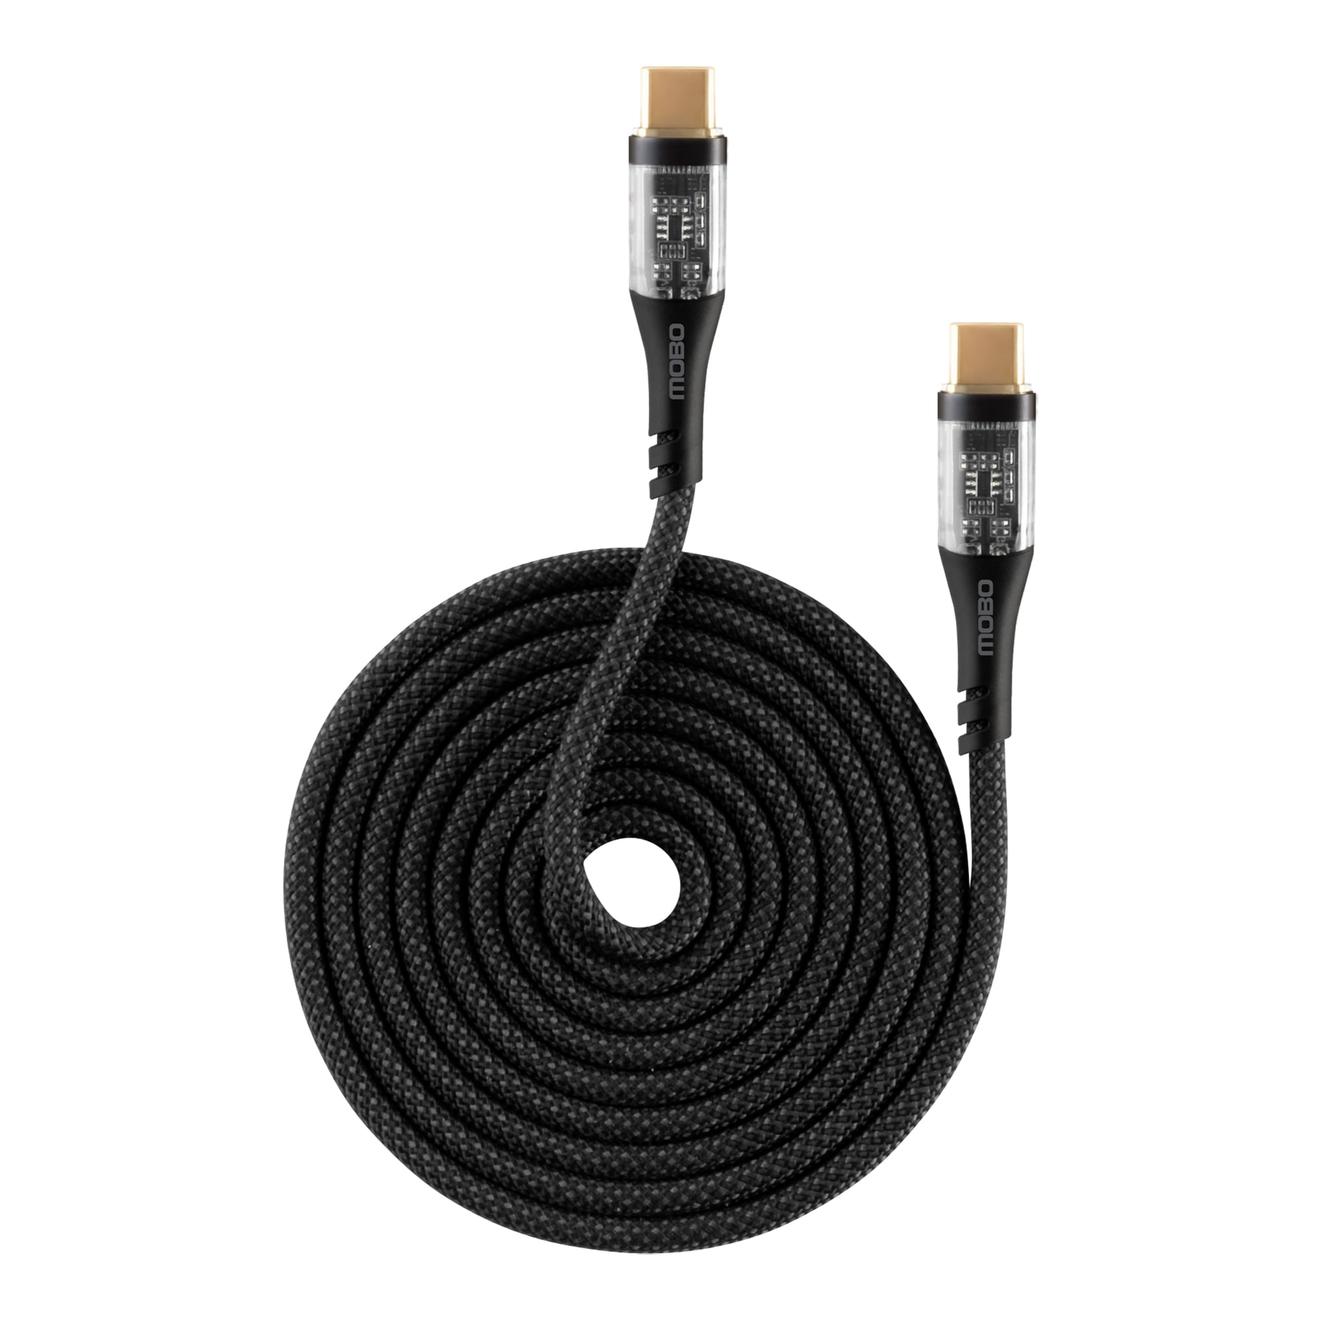 Oferta de Cable Mobo Flux Tipo C A Tipo C Negro 1.2m 5a por $213.85 en Mobo